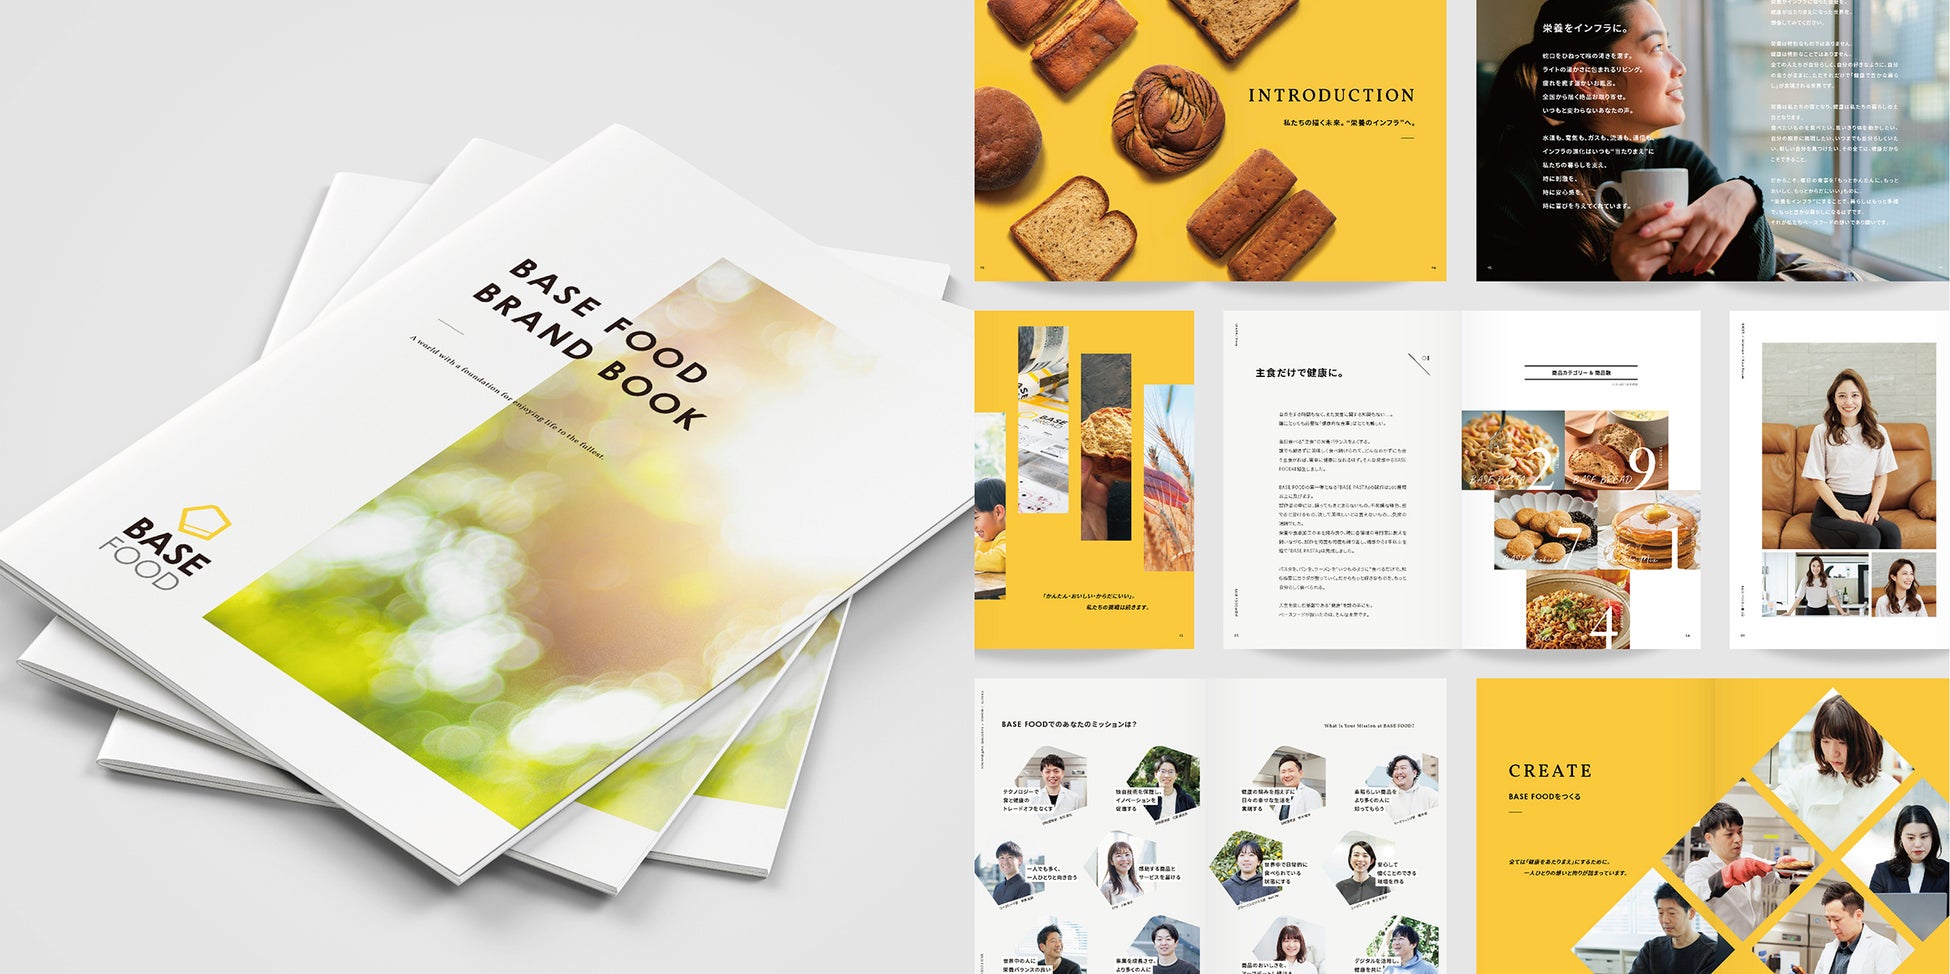 スマートフード完全栄養食のパイオニア ベースフード BASE FOOD「BRAND BOOK」公式サイトで公開